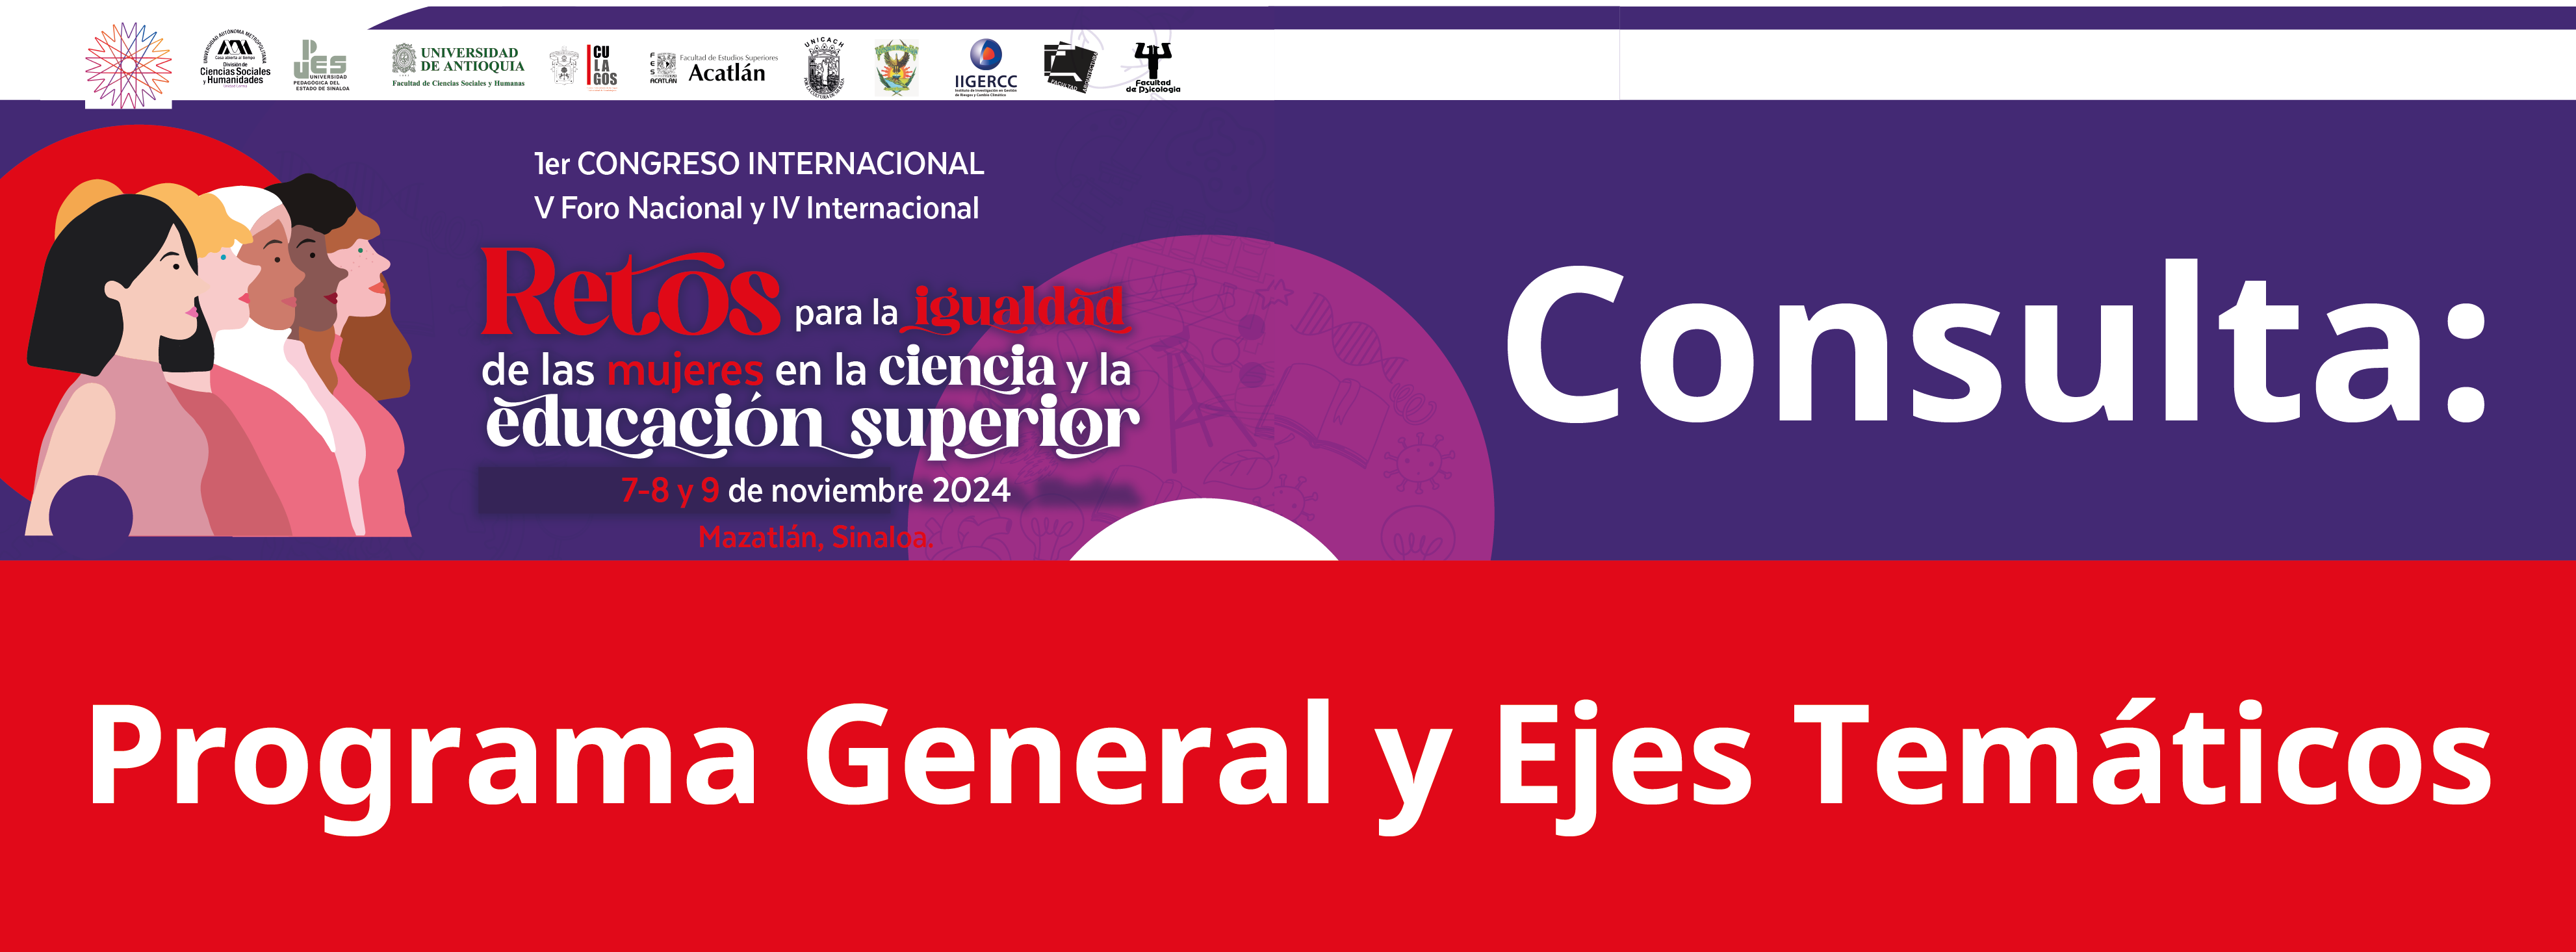 Congreso_Retos_para_la_igualdad_de_las_mujeres_en_la_ciencia_y_la_educacion_superior_Ejes_tematicos_Banner_web